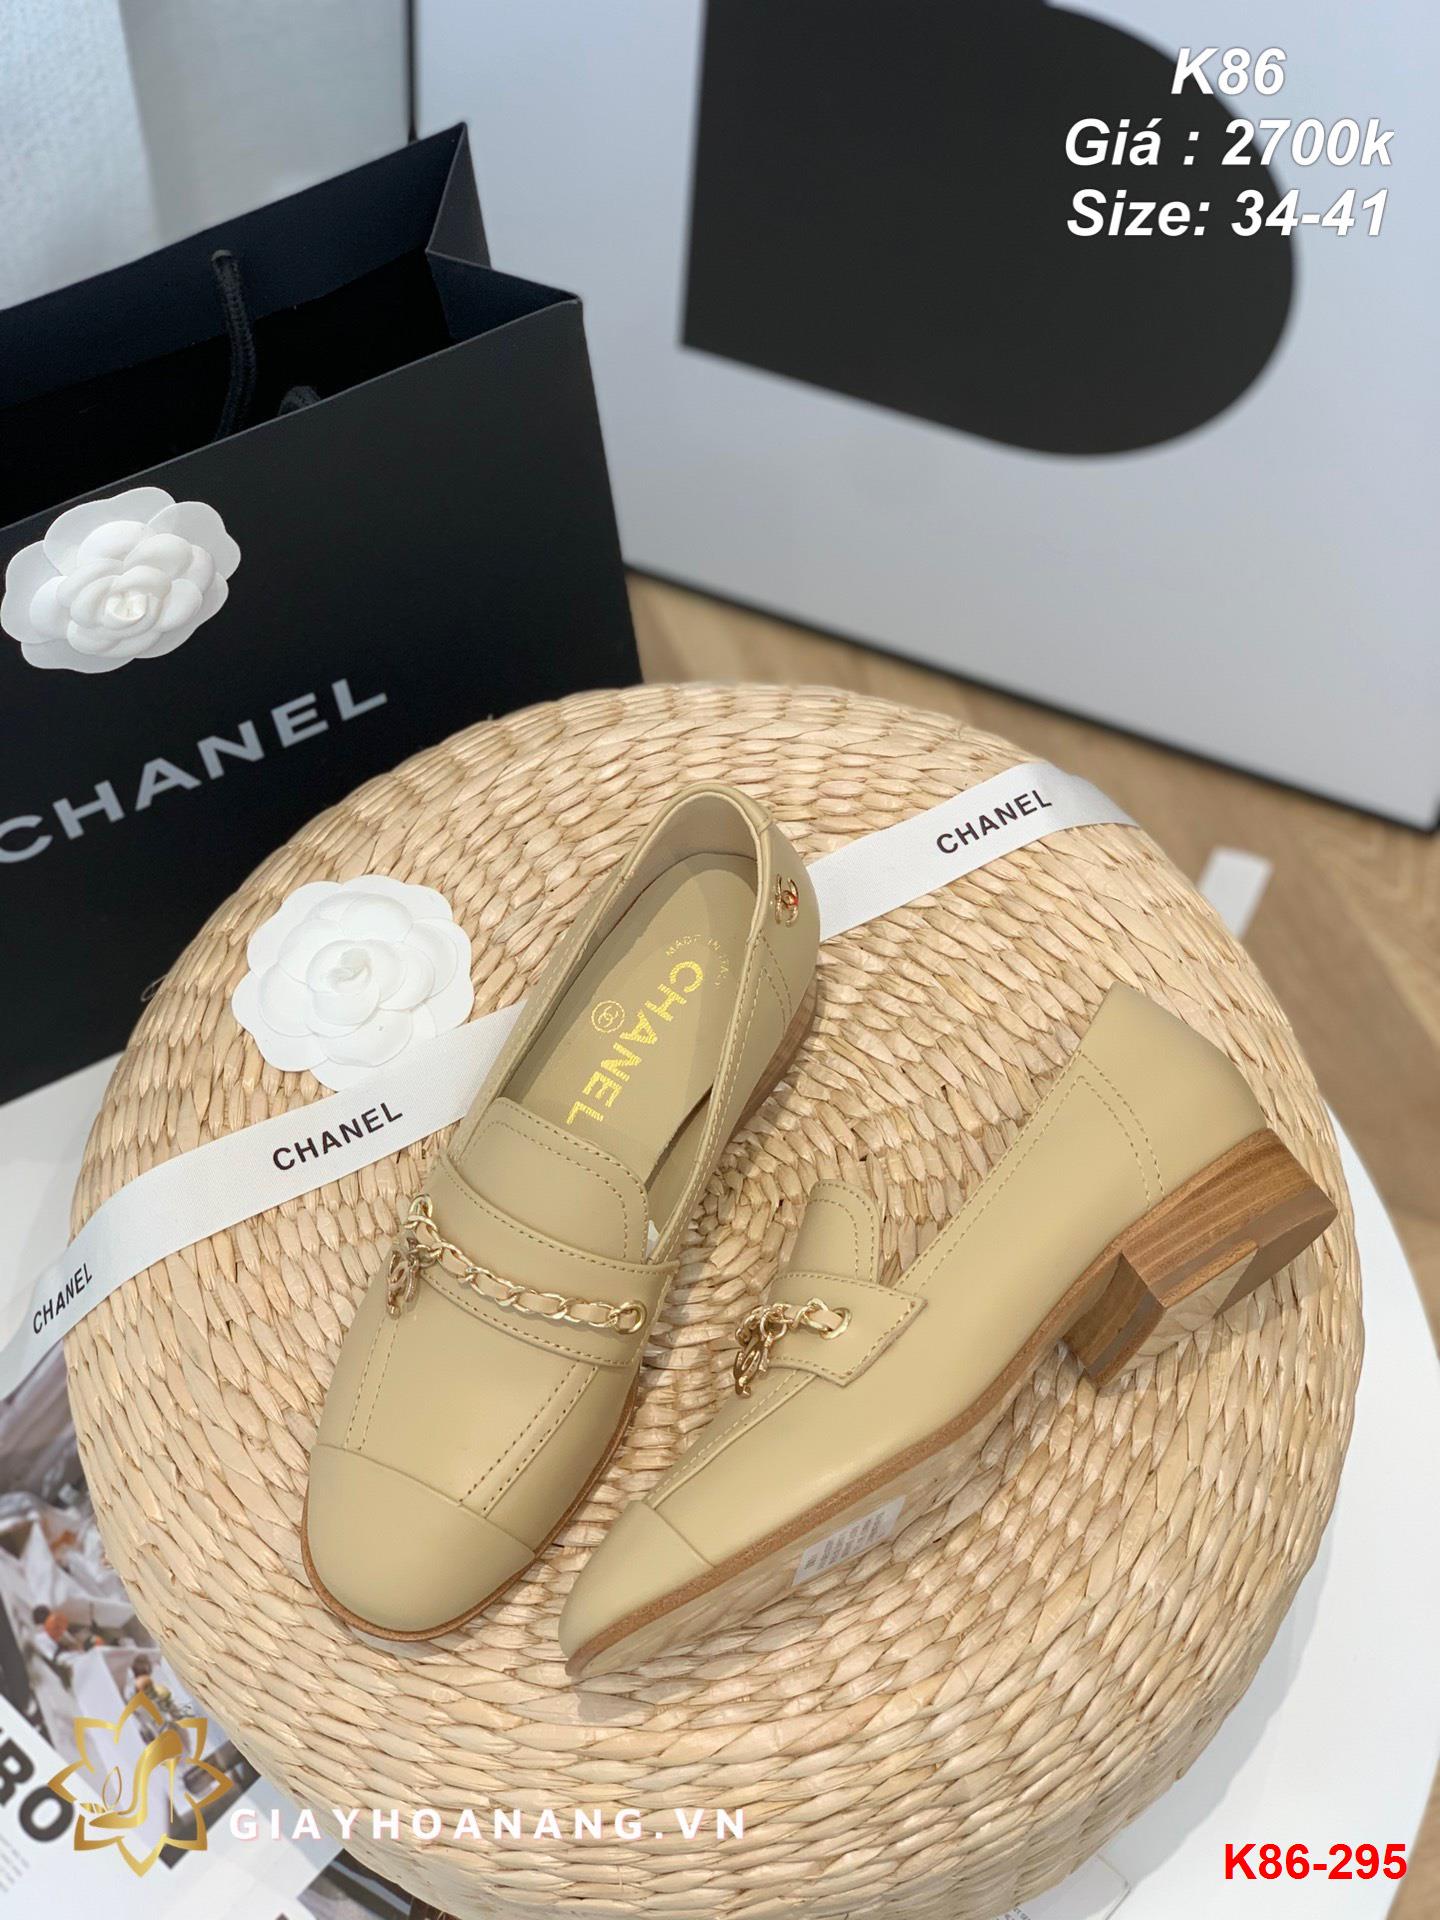 K86-295 Chanel giày lười siêu cấp